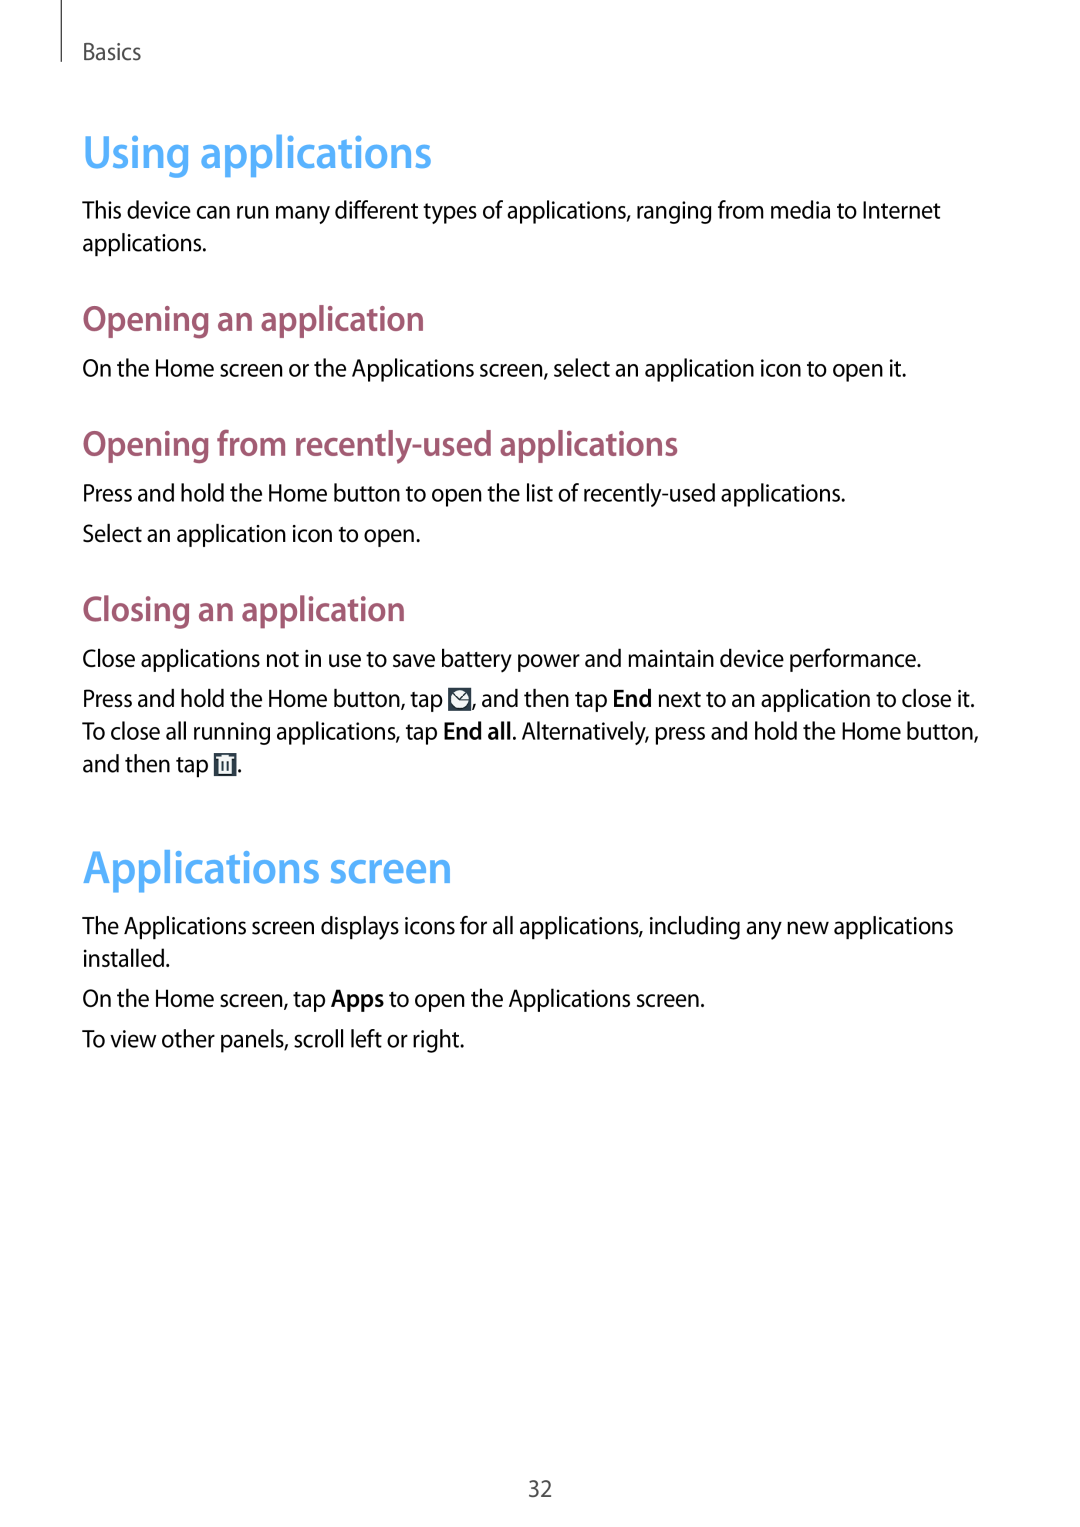 Samsung GT-I8730TAAVGR Using applications, Applications screen, Opening an application, Closing an application, Basics 